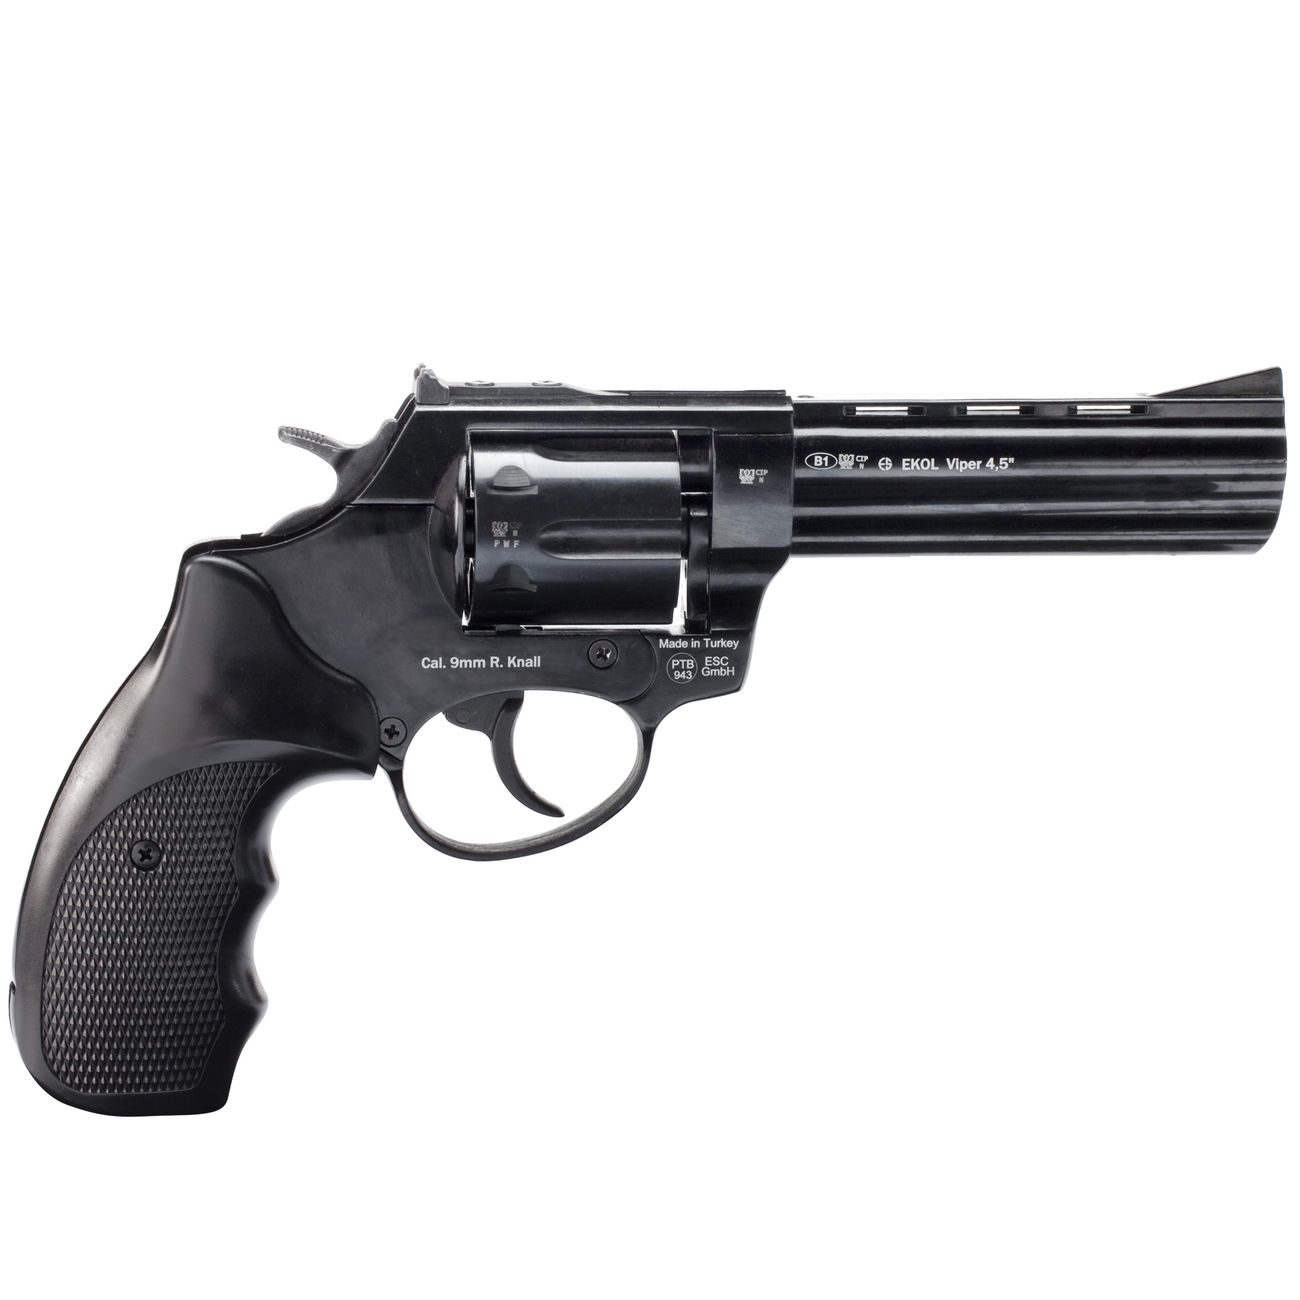 Ekol Viper 4,5 Zoll Schreckschuss Revolver brniert Kal. 9 mm R.K. Vorfhrmodell Bild 2